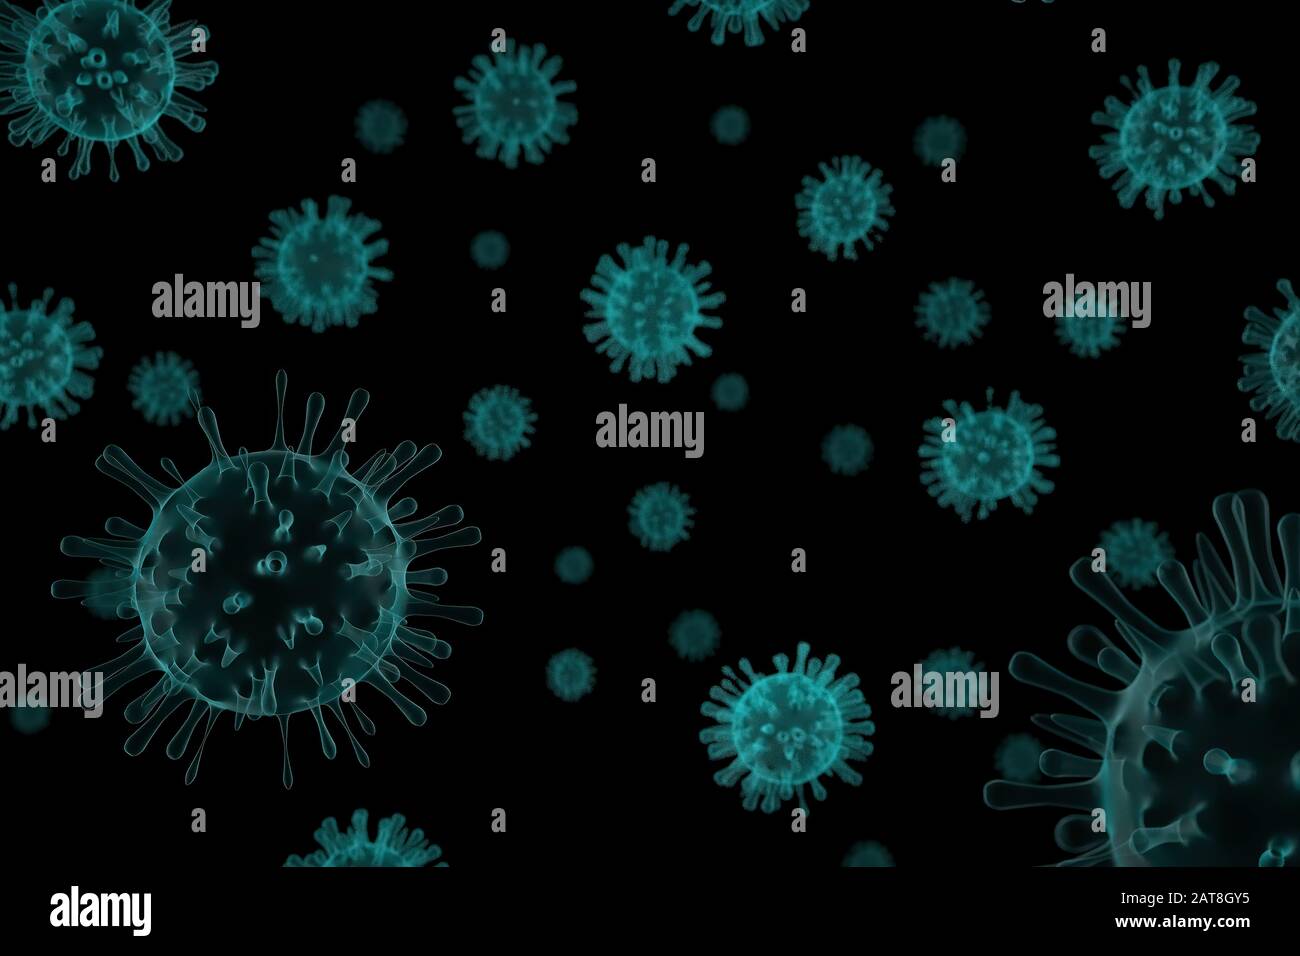 Illustrazione 3D, primo piano del microscopio influenza Virus su sfondo nero Foto Stock